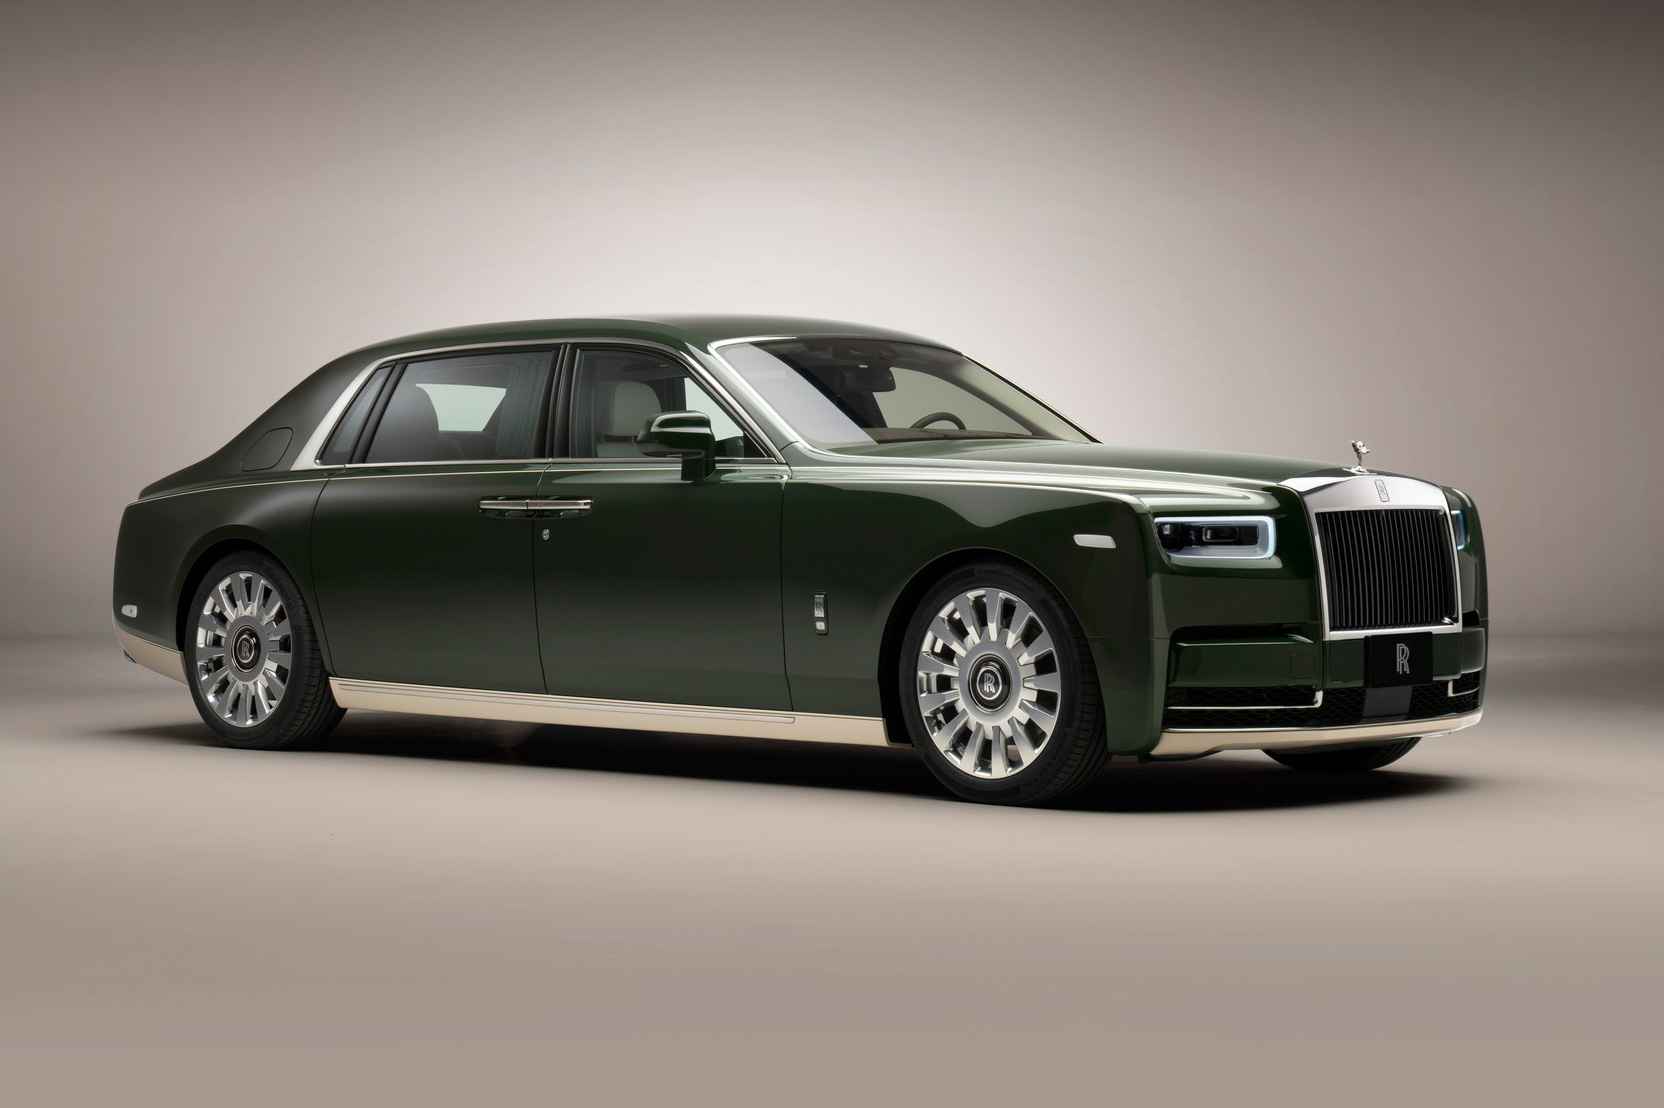 Rolls-Royce sắp mất đi 'kỳ quan công nghệ' khiến nhiều người tiếc nuối?